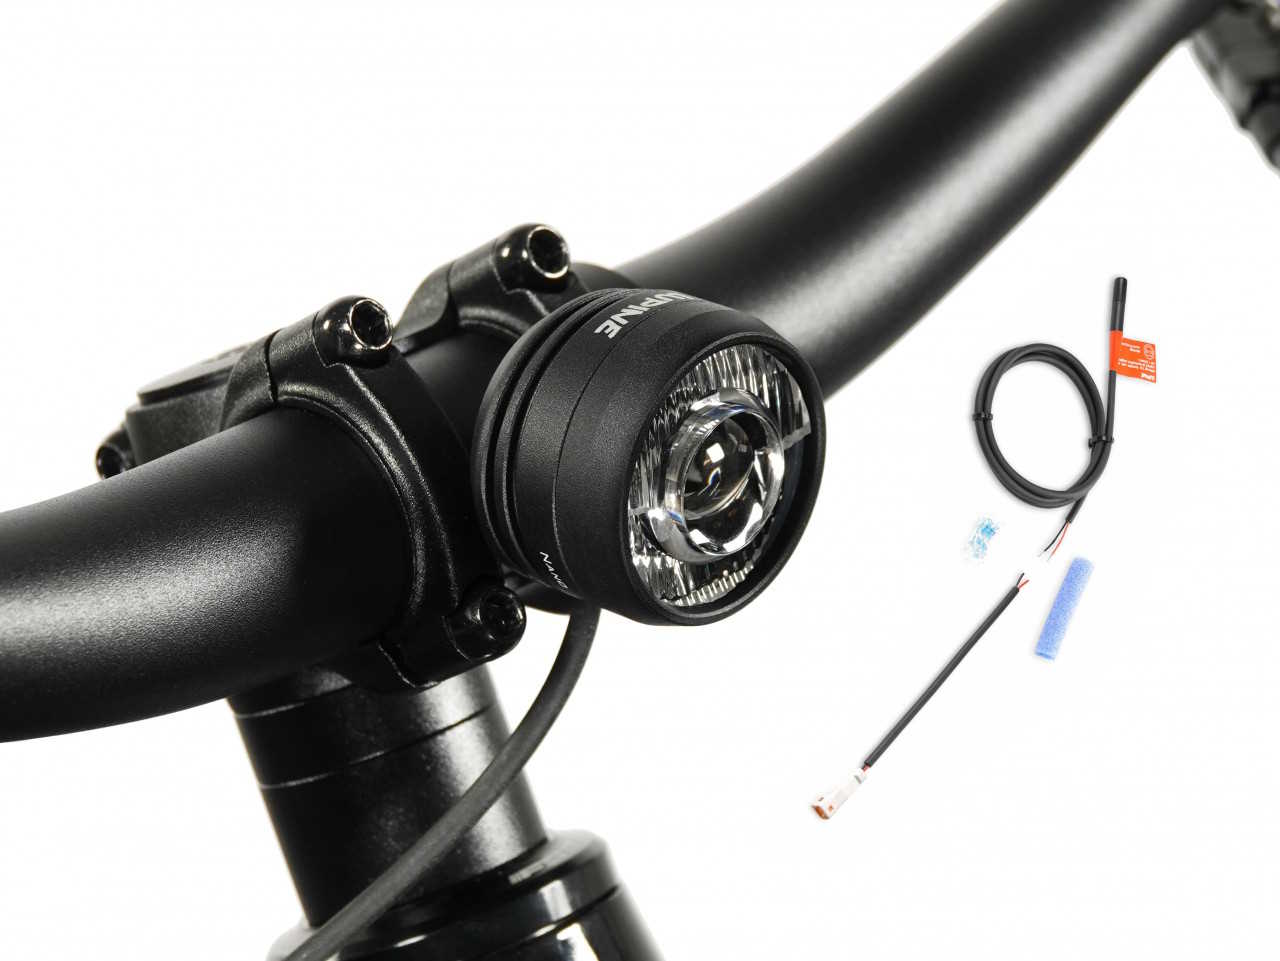 Produktbild von Lupine SL Nano für E-Bikes mit Giant Motor, E-Bike Beleuchtung mit 1000 Lumen Fernlicht, Lenkerhalter 31,8mm + Kabelfernbedienung